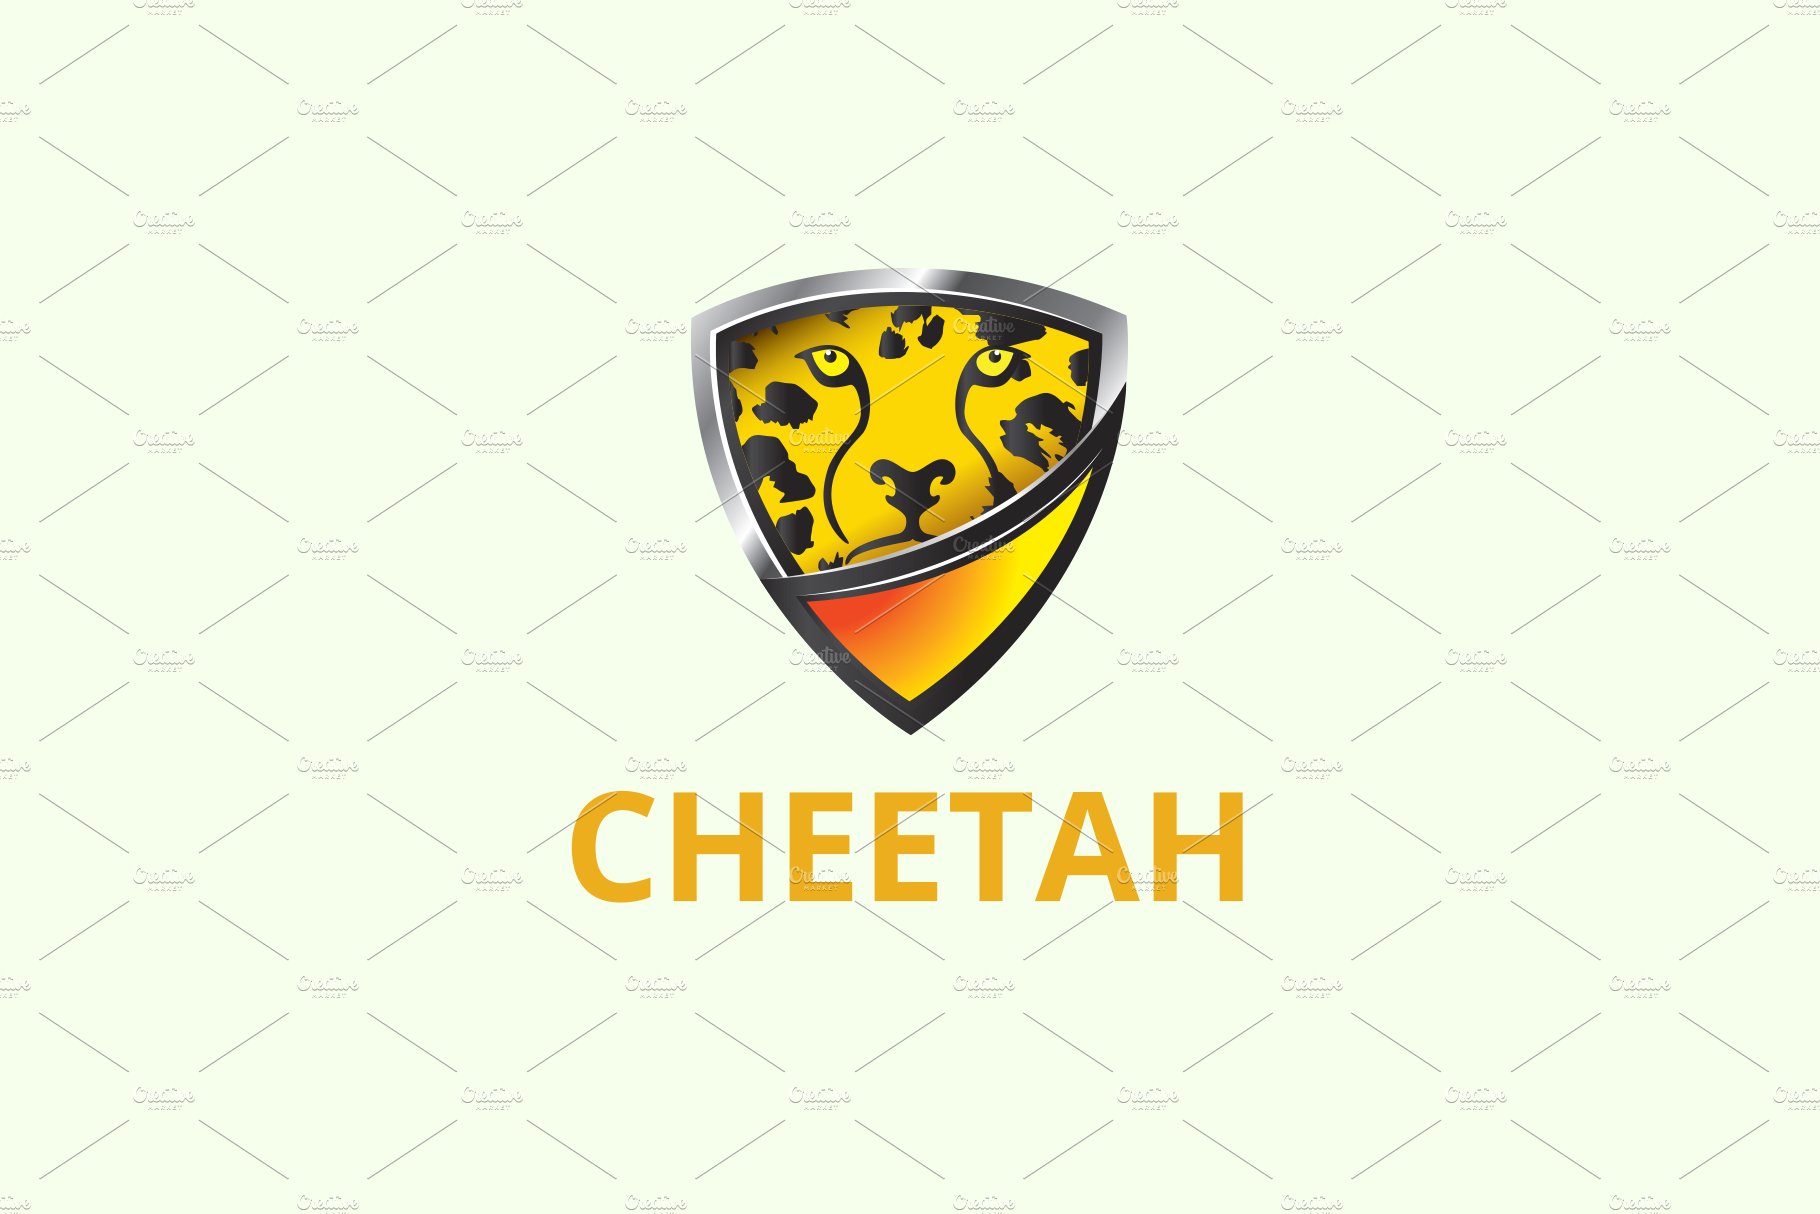 Cheetah Shield Logo cover image.